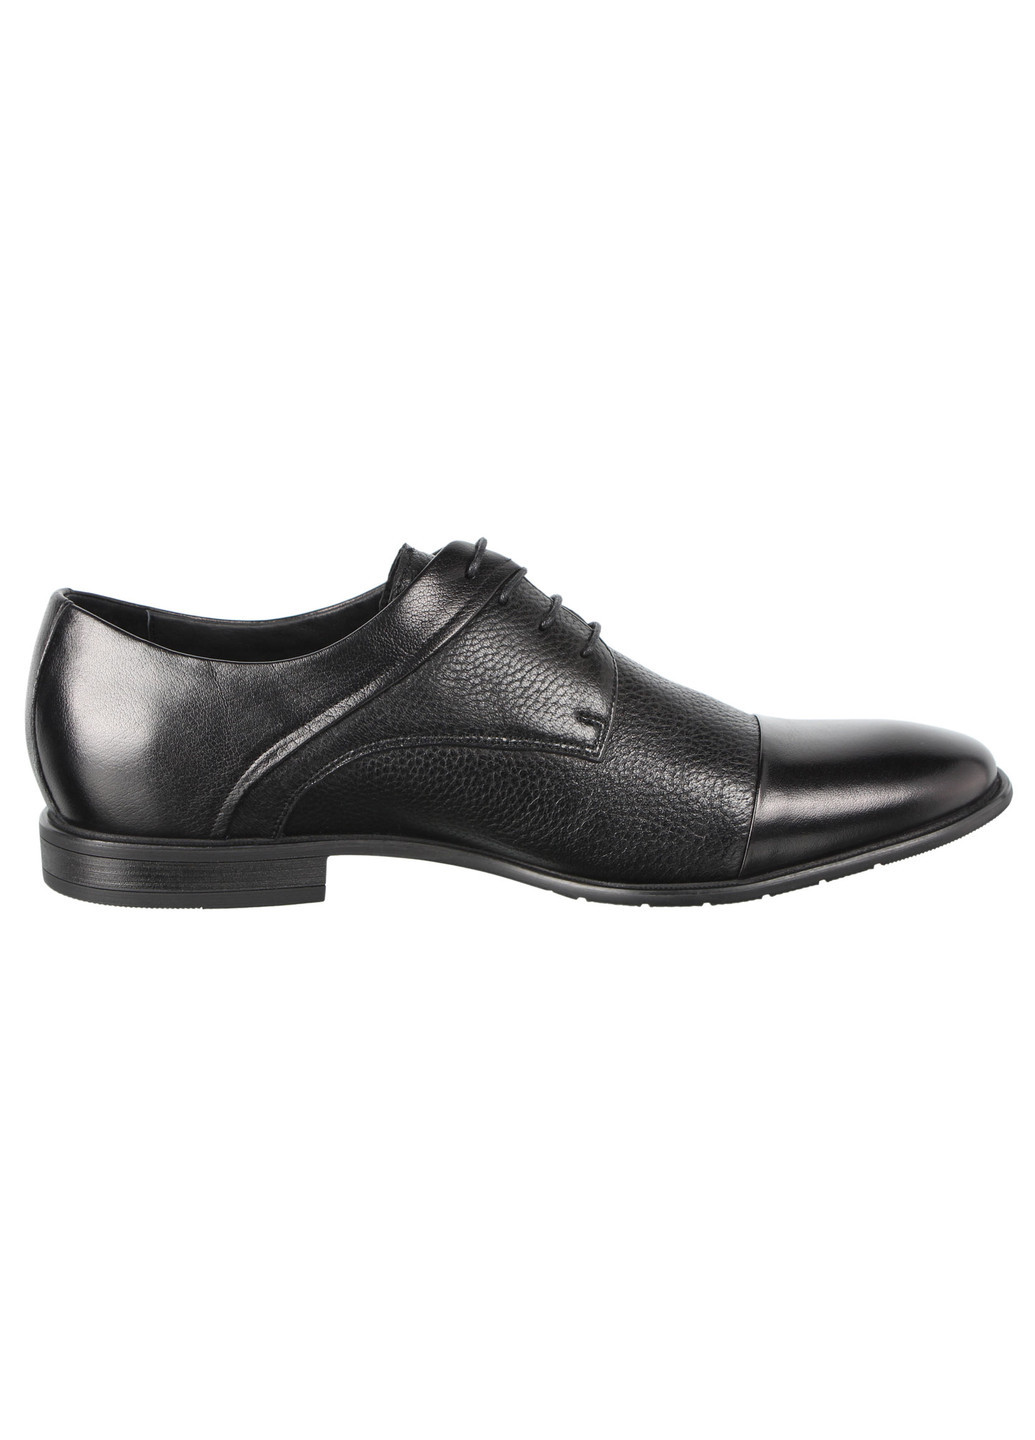 Черные мужские классические туфли 197205 Cosottinni на шнурках